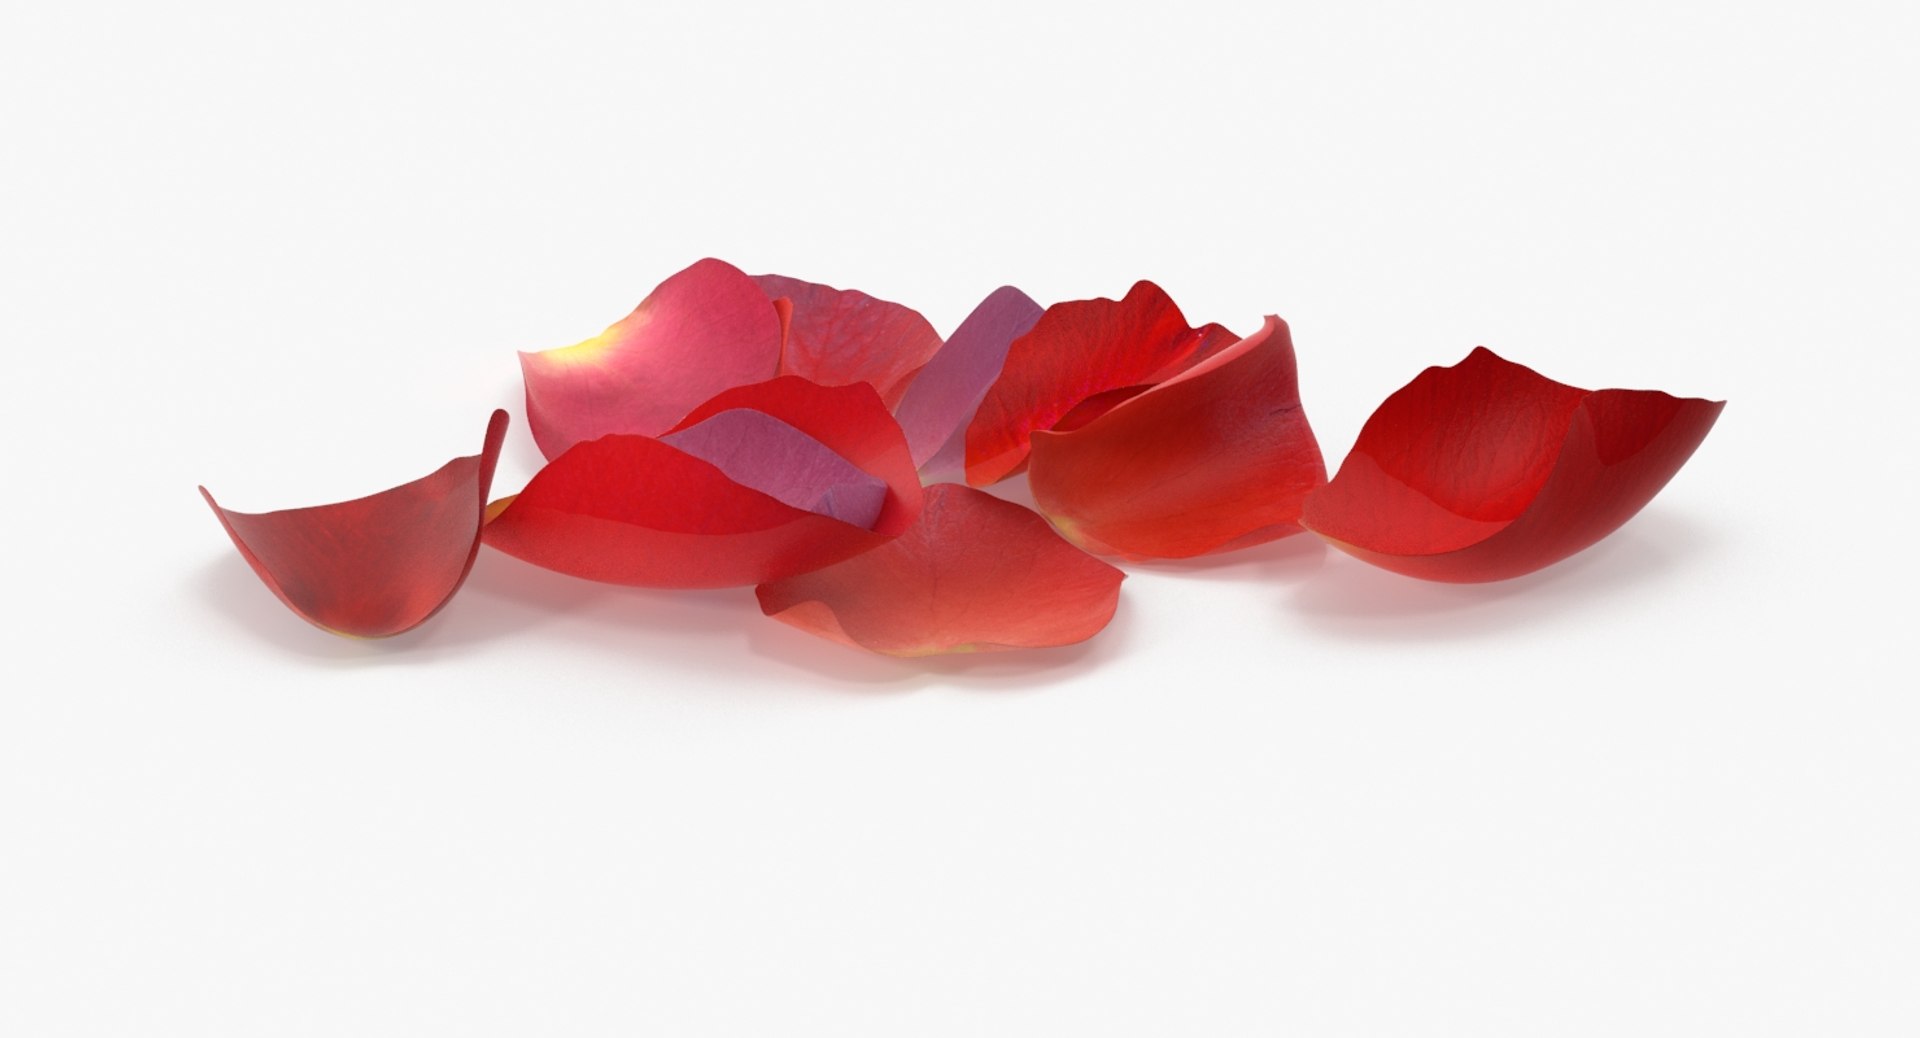 39,357 Rose Petals Falling Images, Stock Photos, 3D objects, & Vectors